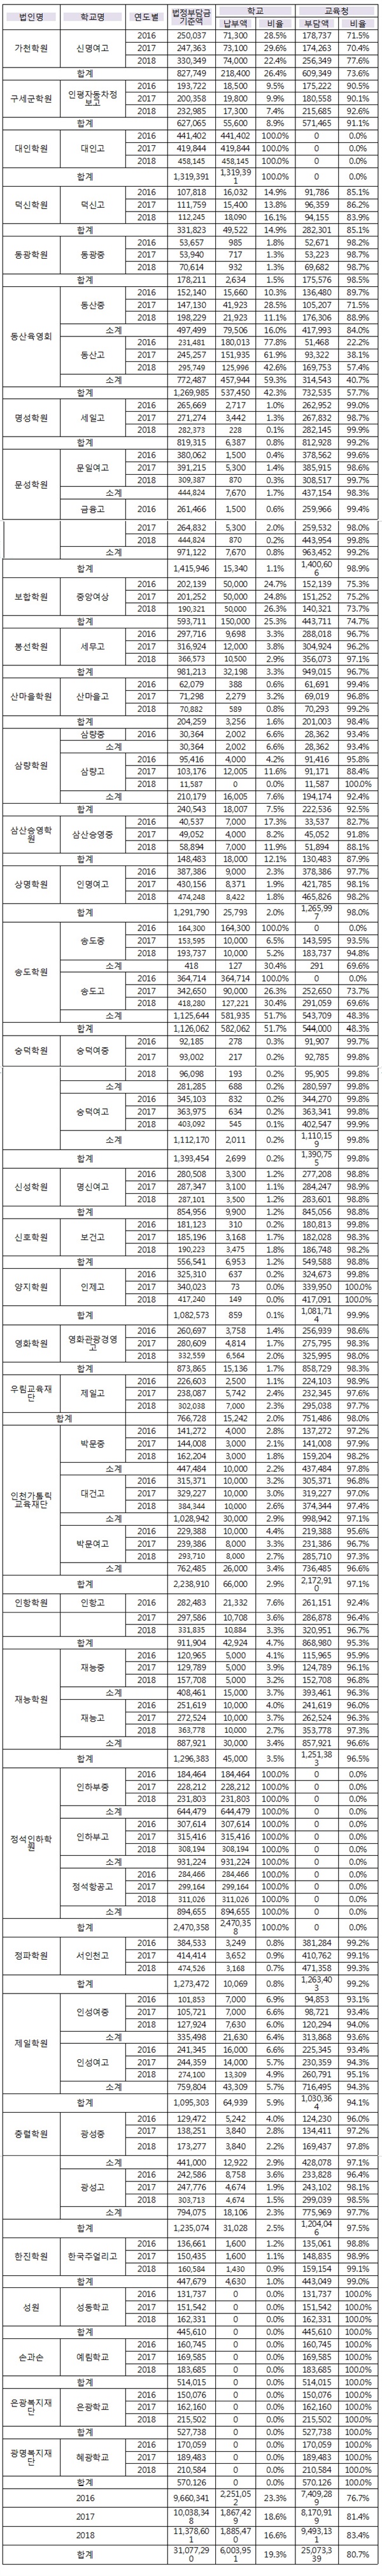 2016~2018 인천지역 사립학교재단 법인별 법정부담금 현황